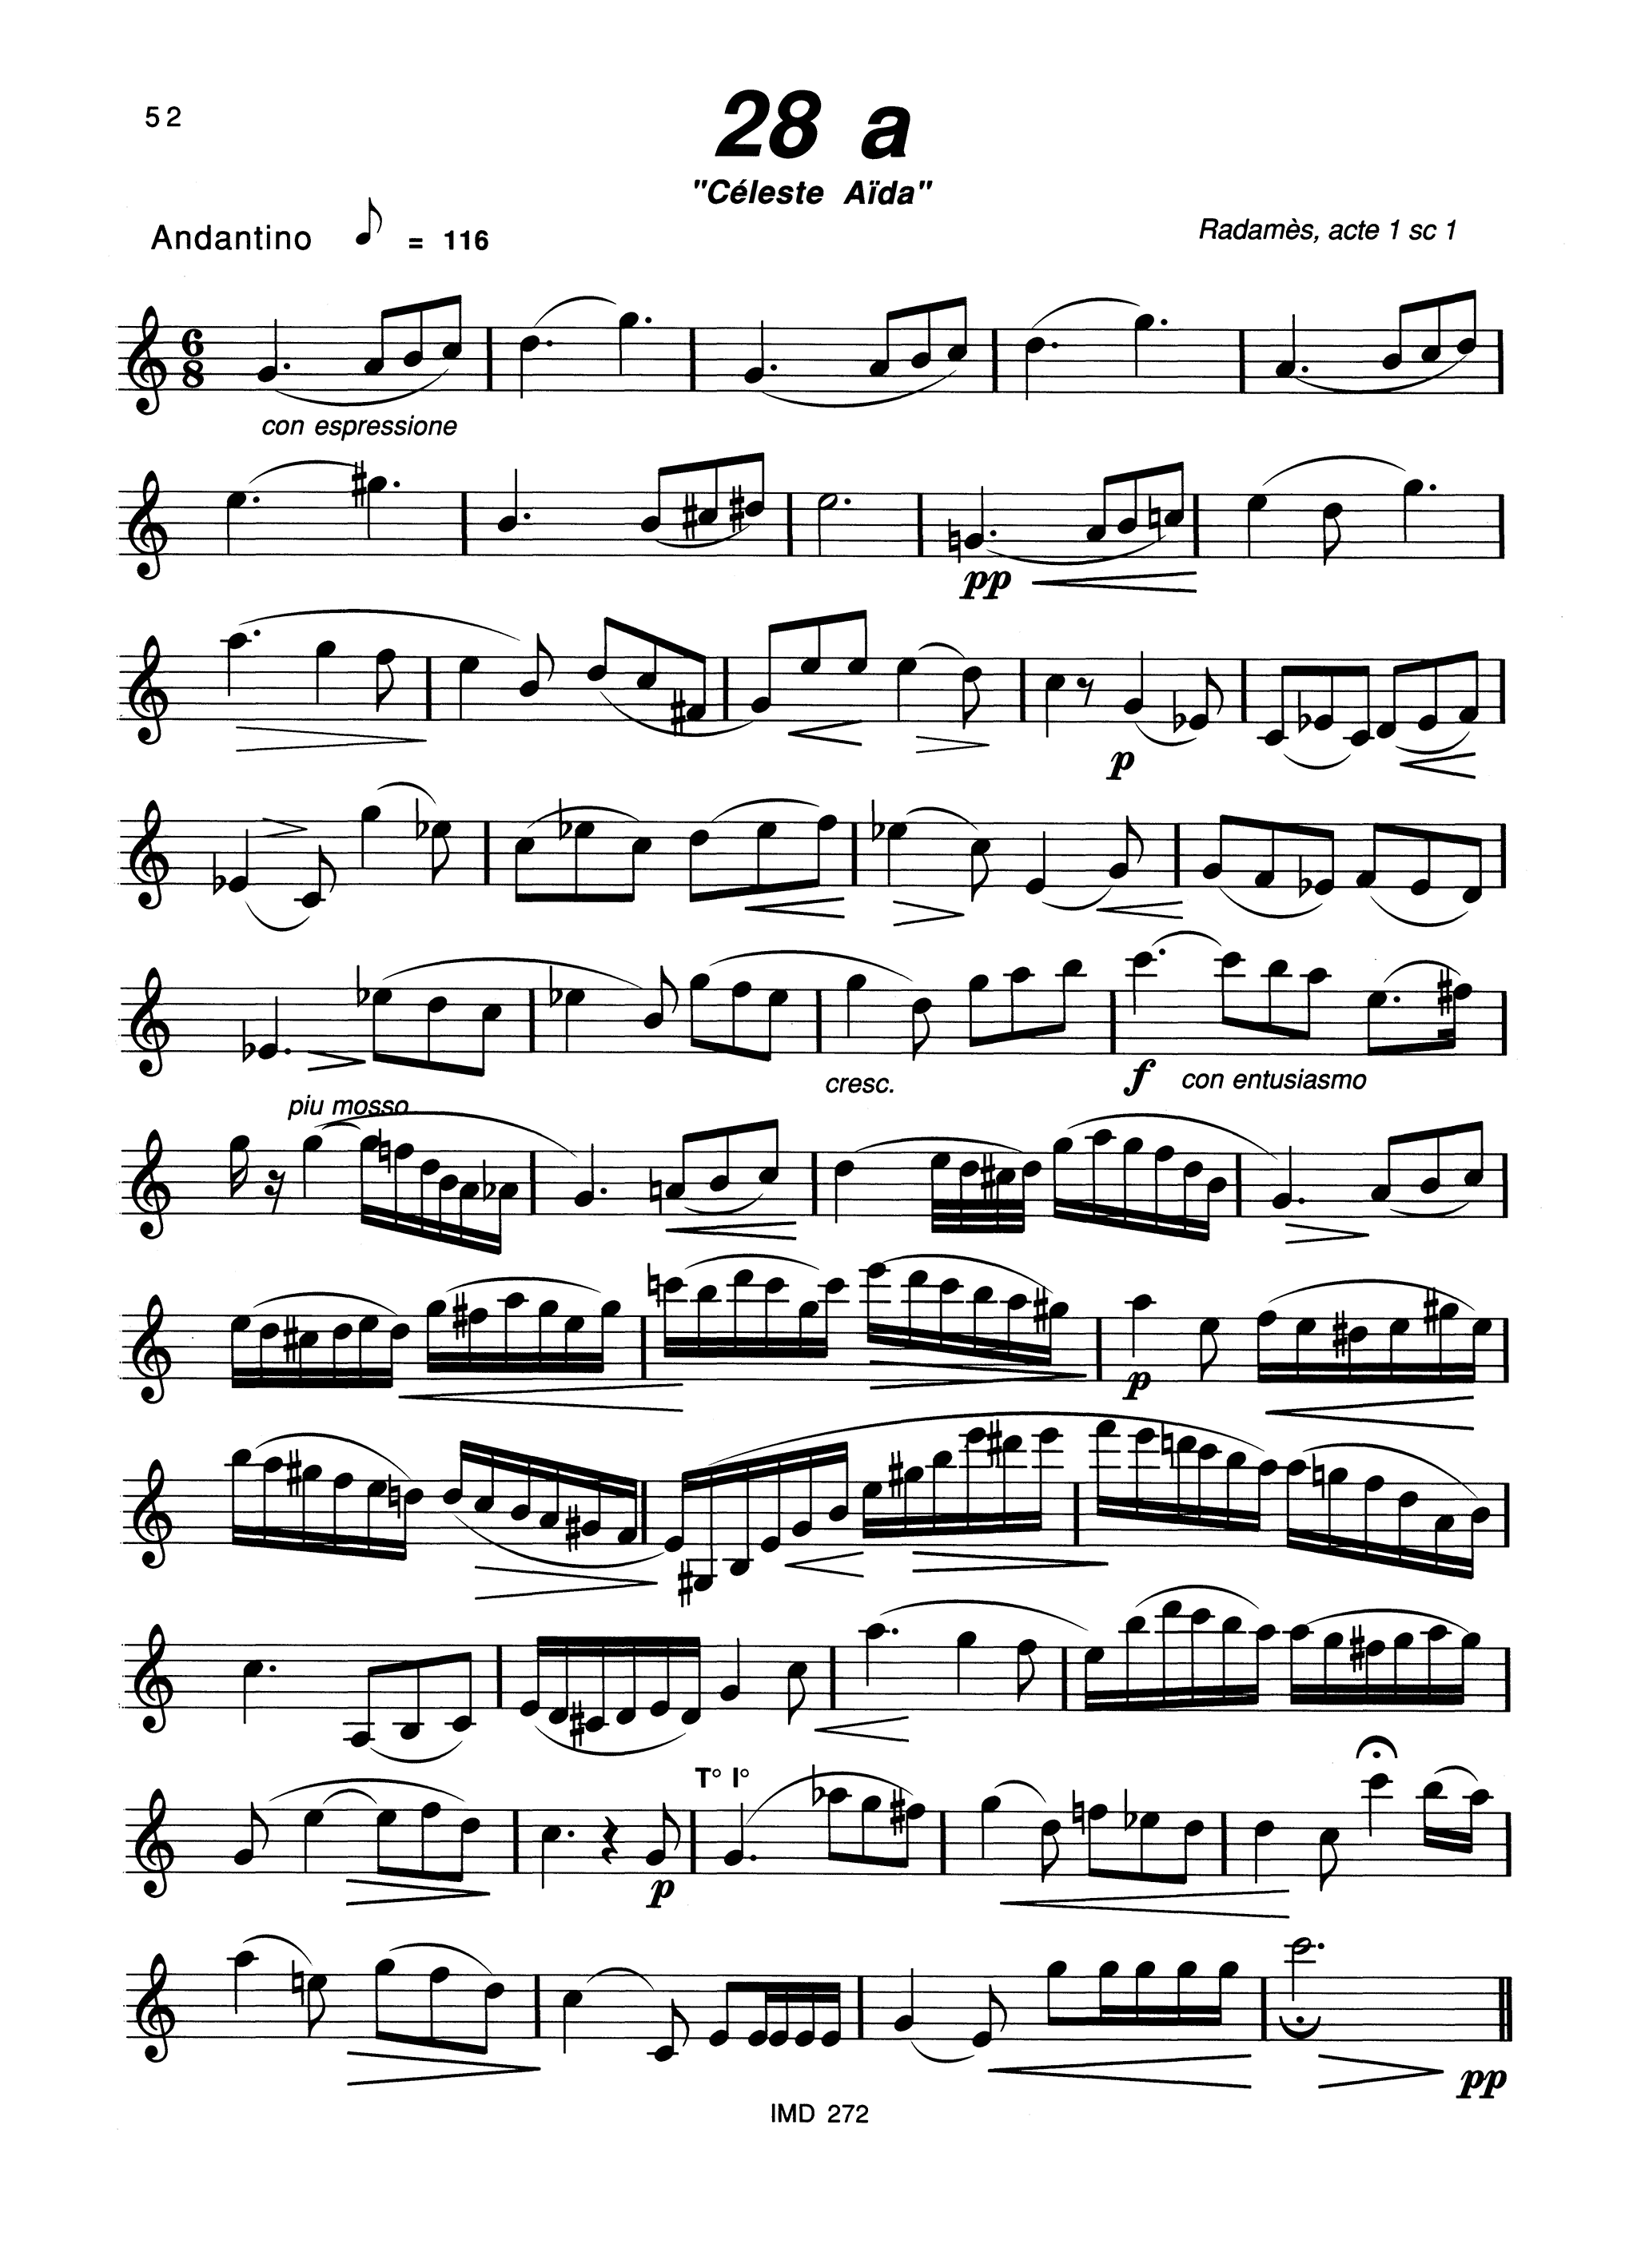 33 Études after Verdi Page 52